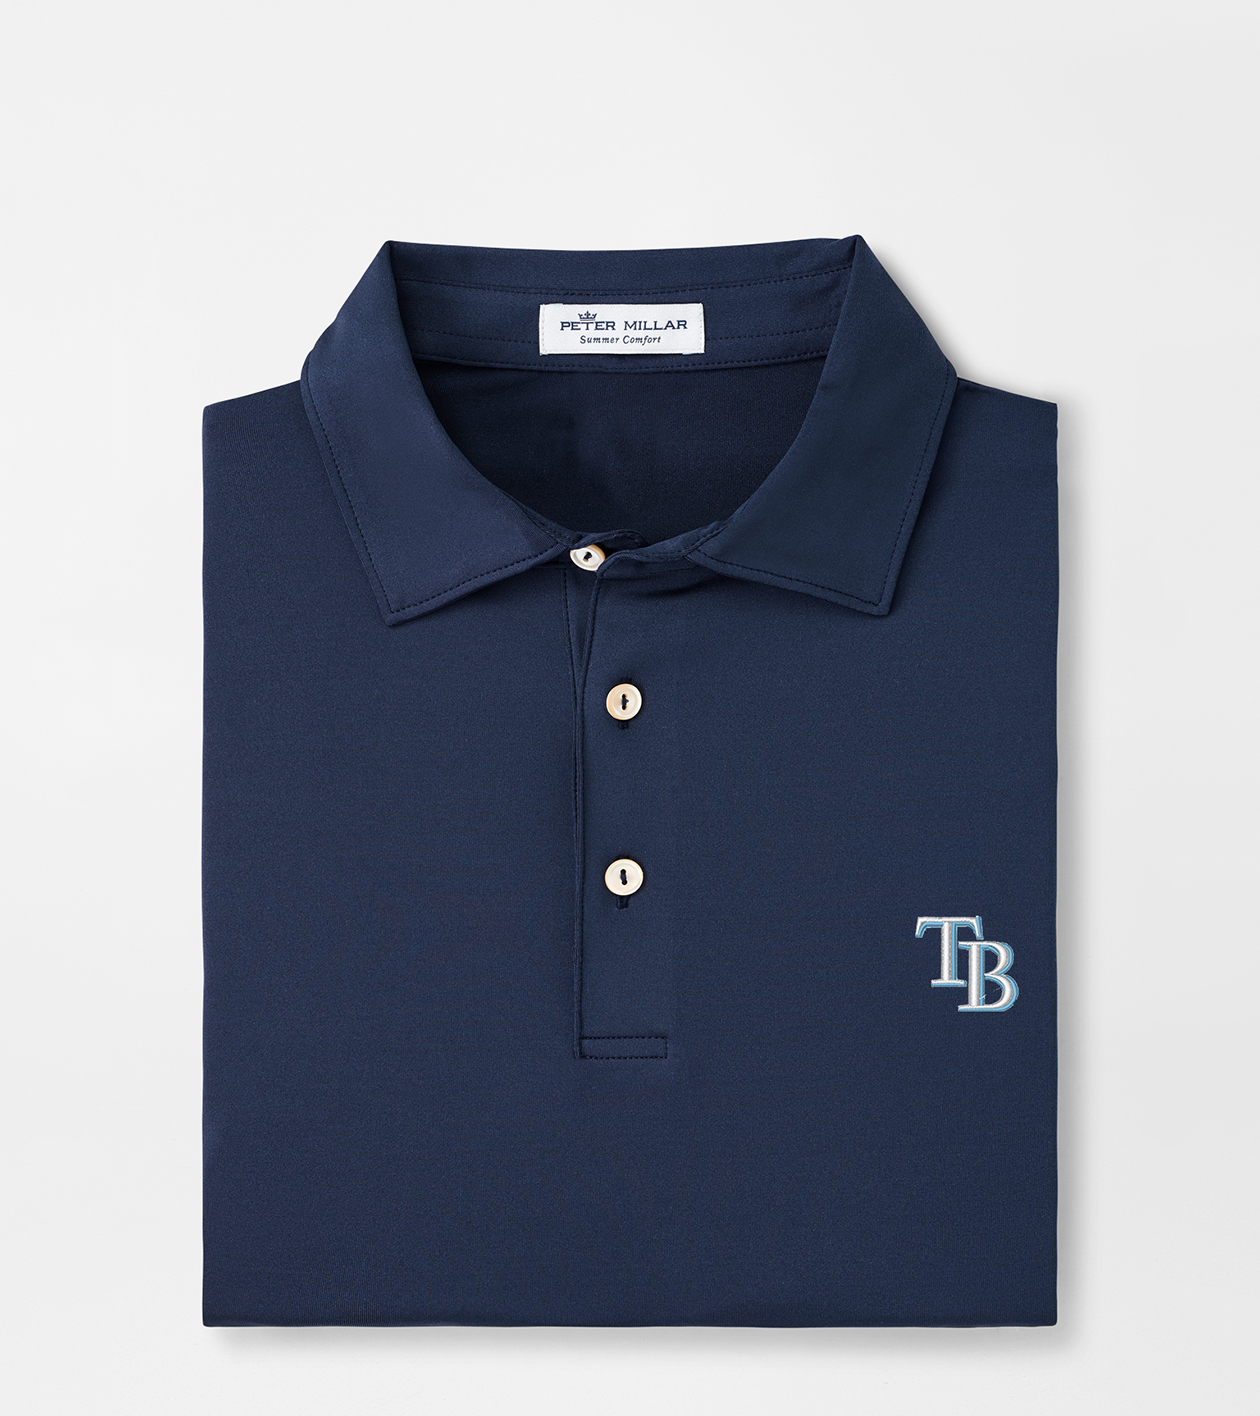 Tampa Bay Rays Polos, Golf Shirt, Rays Polo Shirts